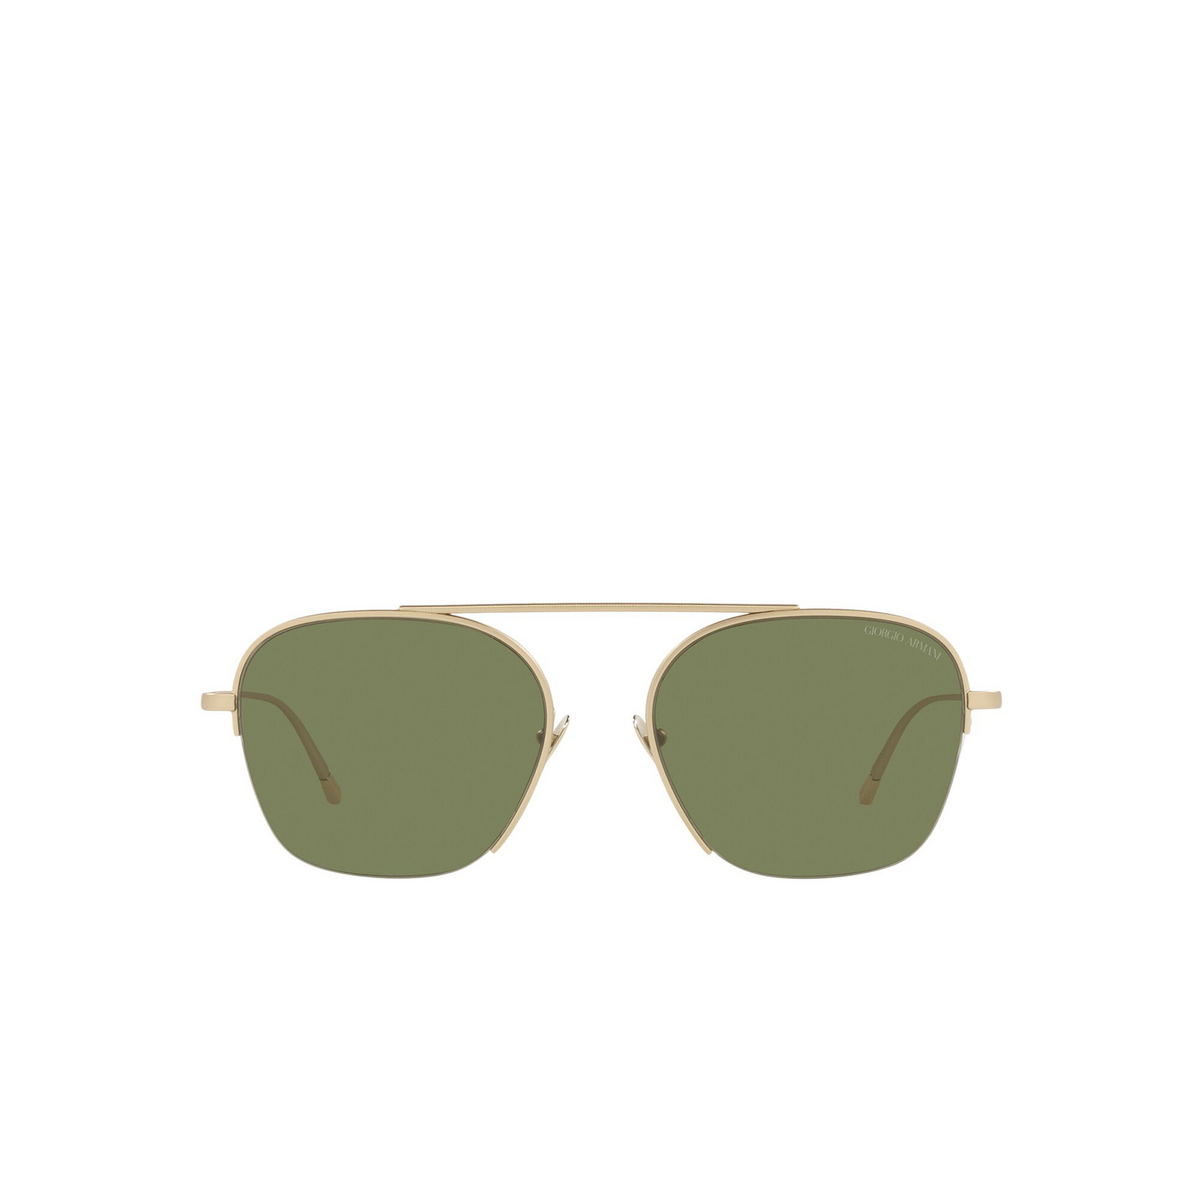 Giorgio Armani® Square Sunglasses: AR6124 color Matte Pale Gold 30022A - front view.